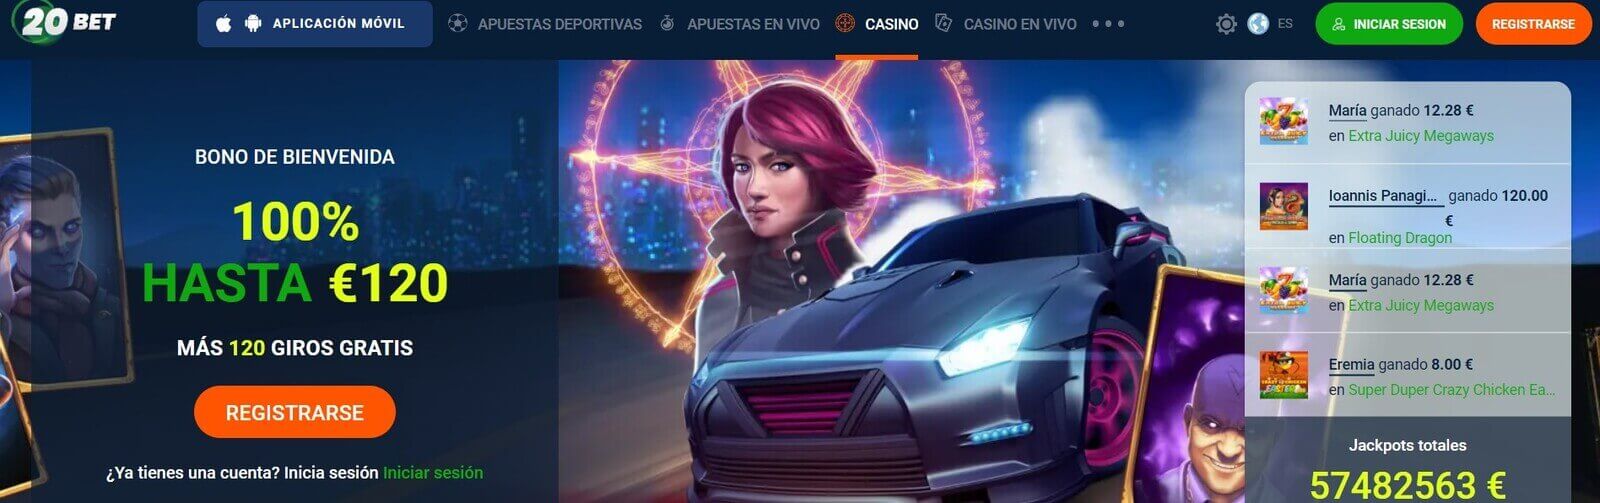 20Bet Casino online en Argentina para jugar en pesos argentinos